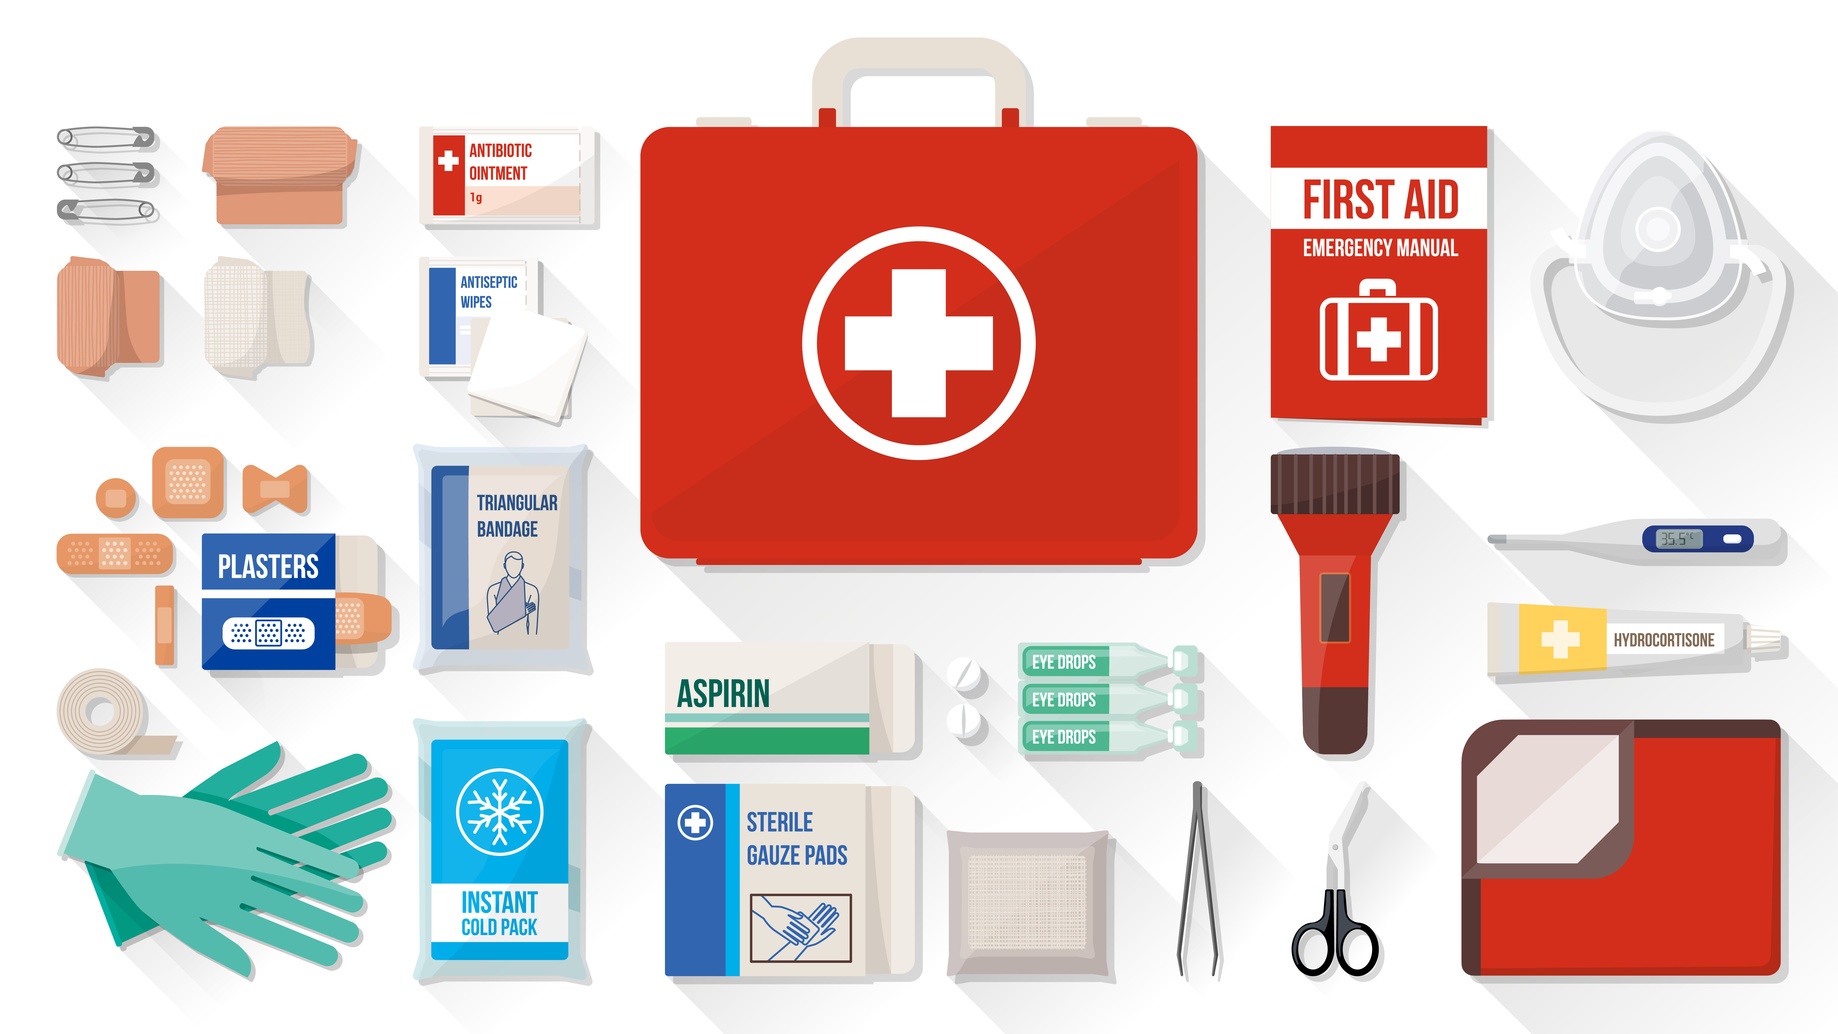 Botiquines de primeros auxilios: ¿Qué deben contener y cómo